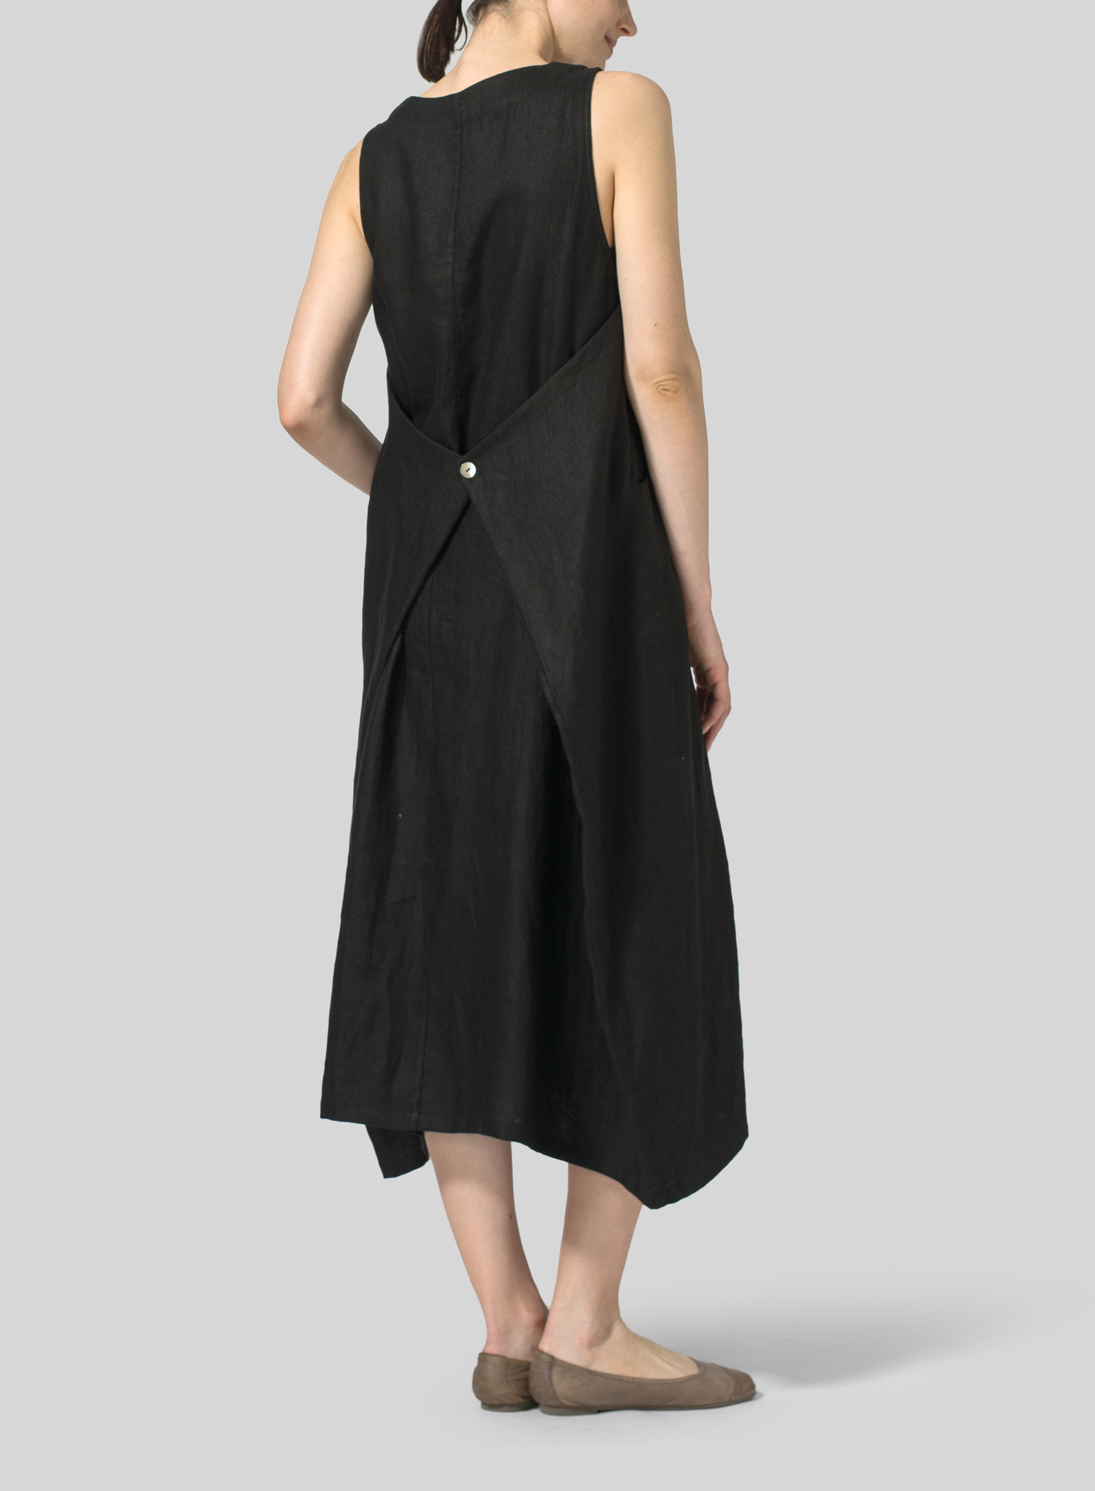 Lightweight Linen Sleeveless Long Dress - Plus Size